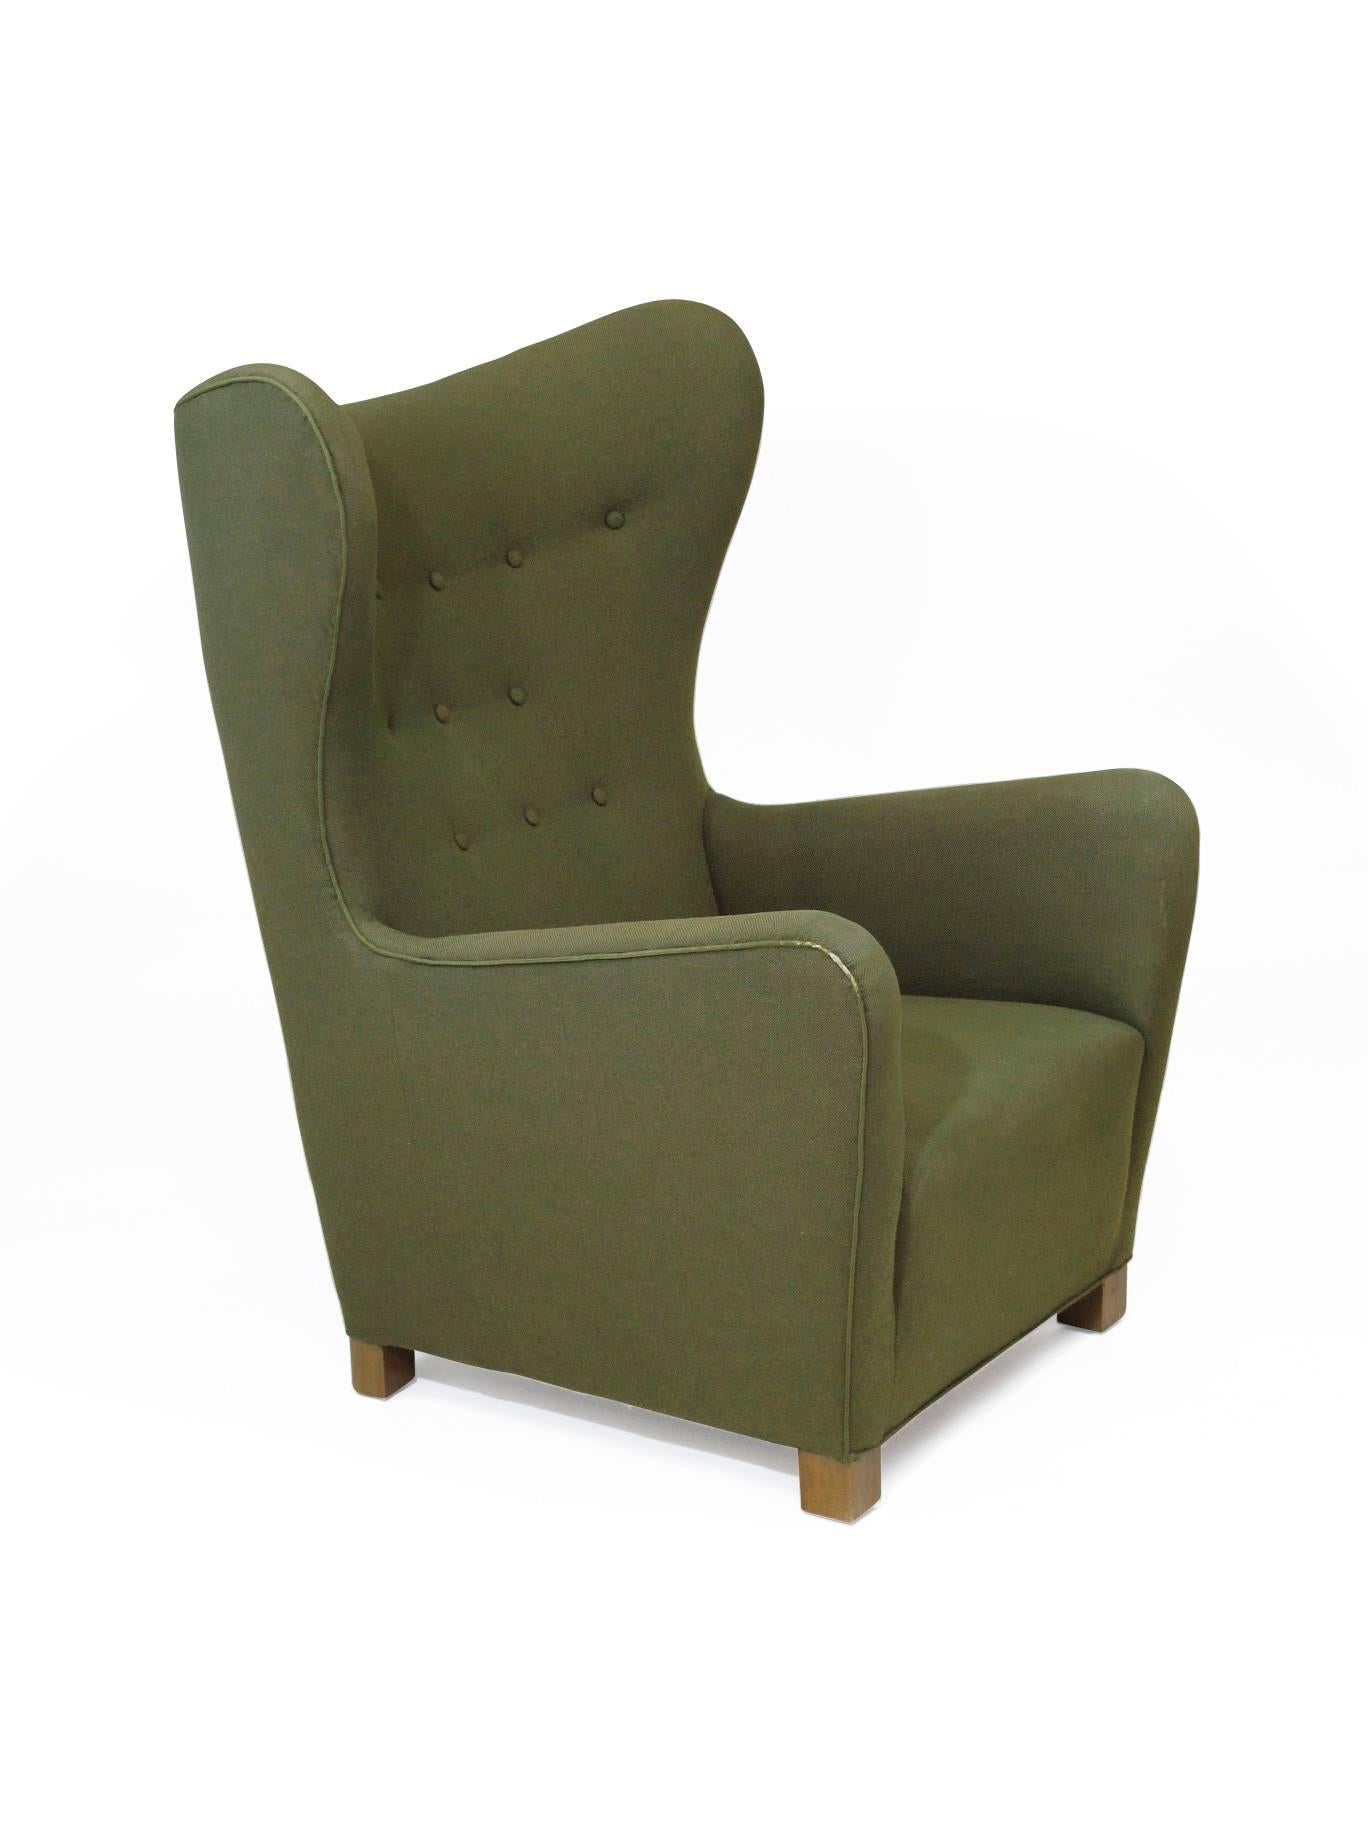 Scandinavian Modern 1942 Fritz Hansen Model 1672 Wing Back Chair in the Original Green Wool Fabric